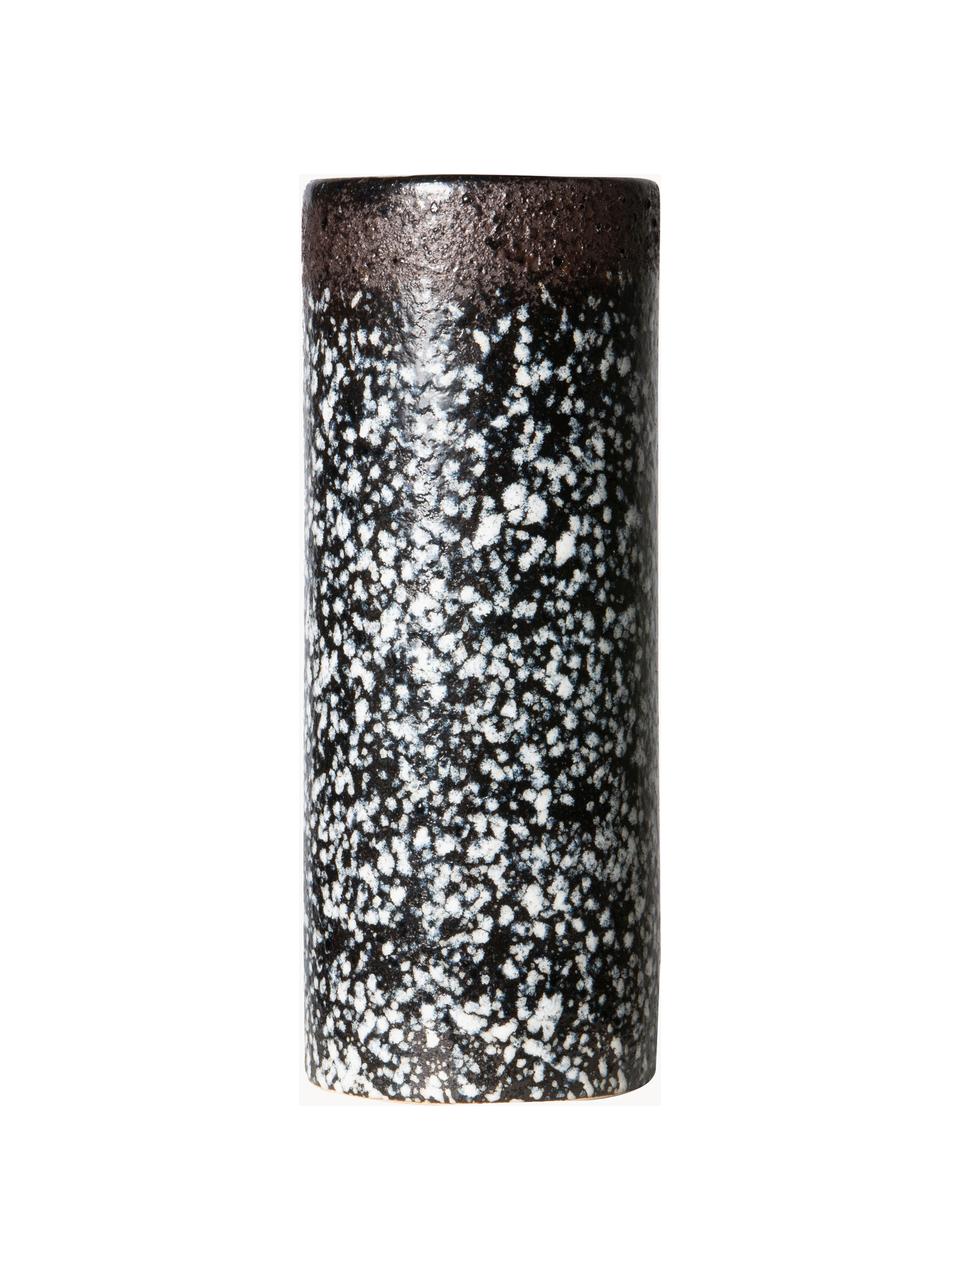 Handbemalte Keramik-Vase 70's mit reaktiver Glasur, H 19 cm, Keramik, Schwarz, Weiss, Ø 8 x H 19 cm